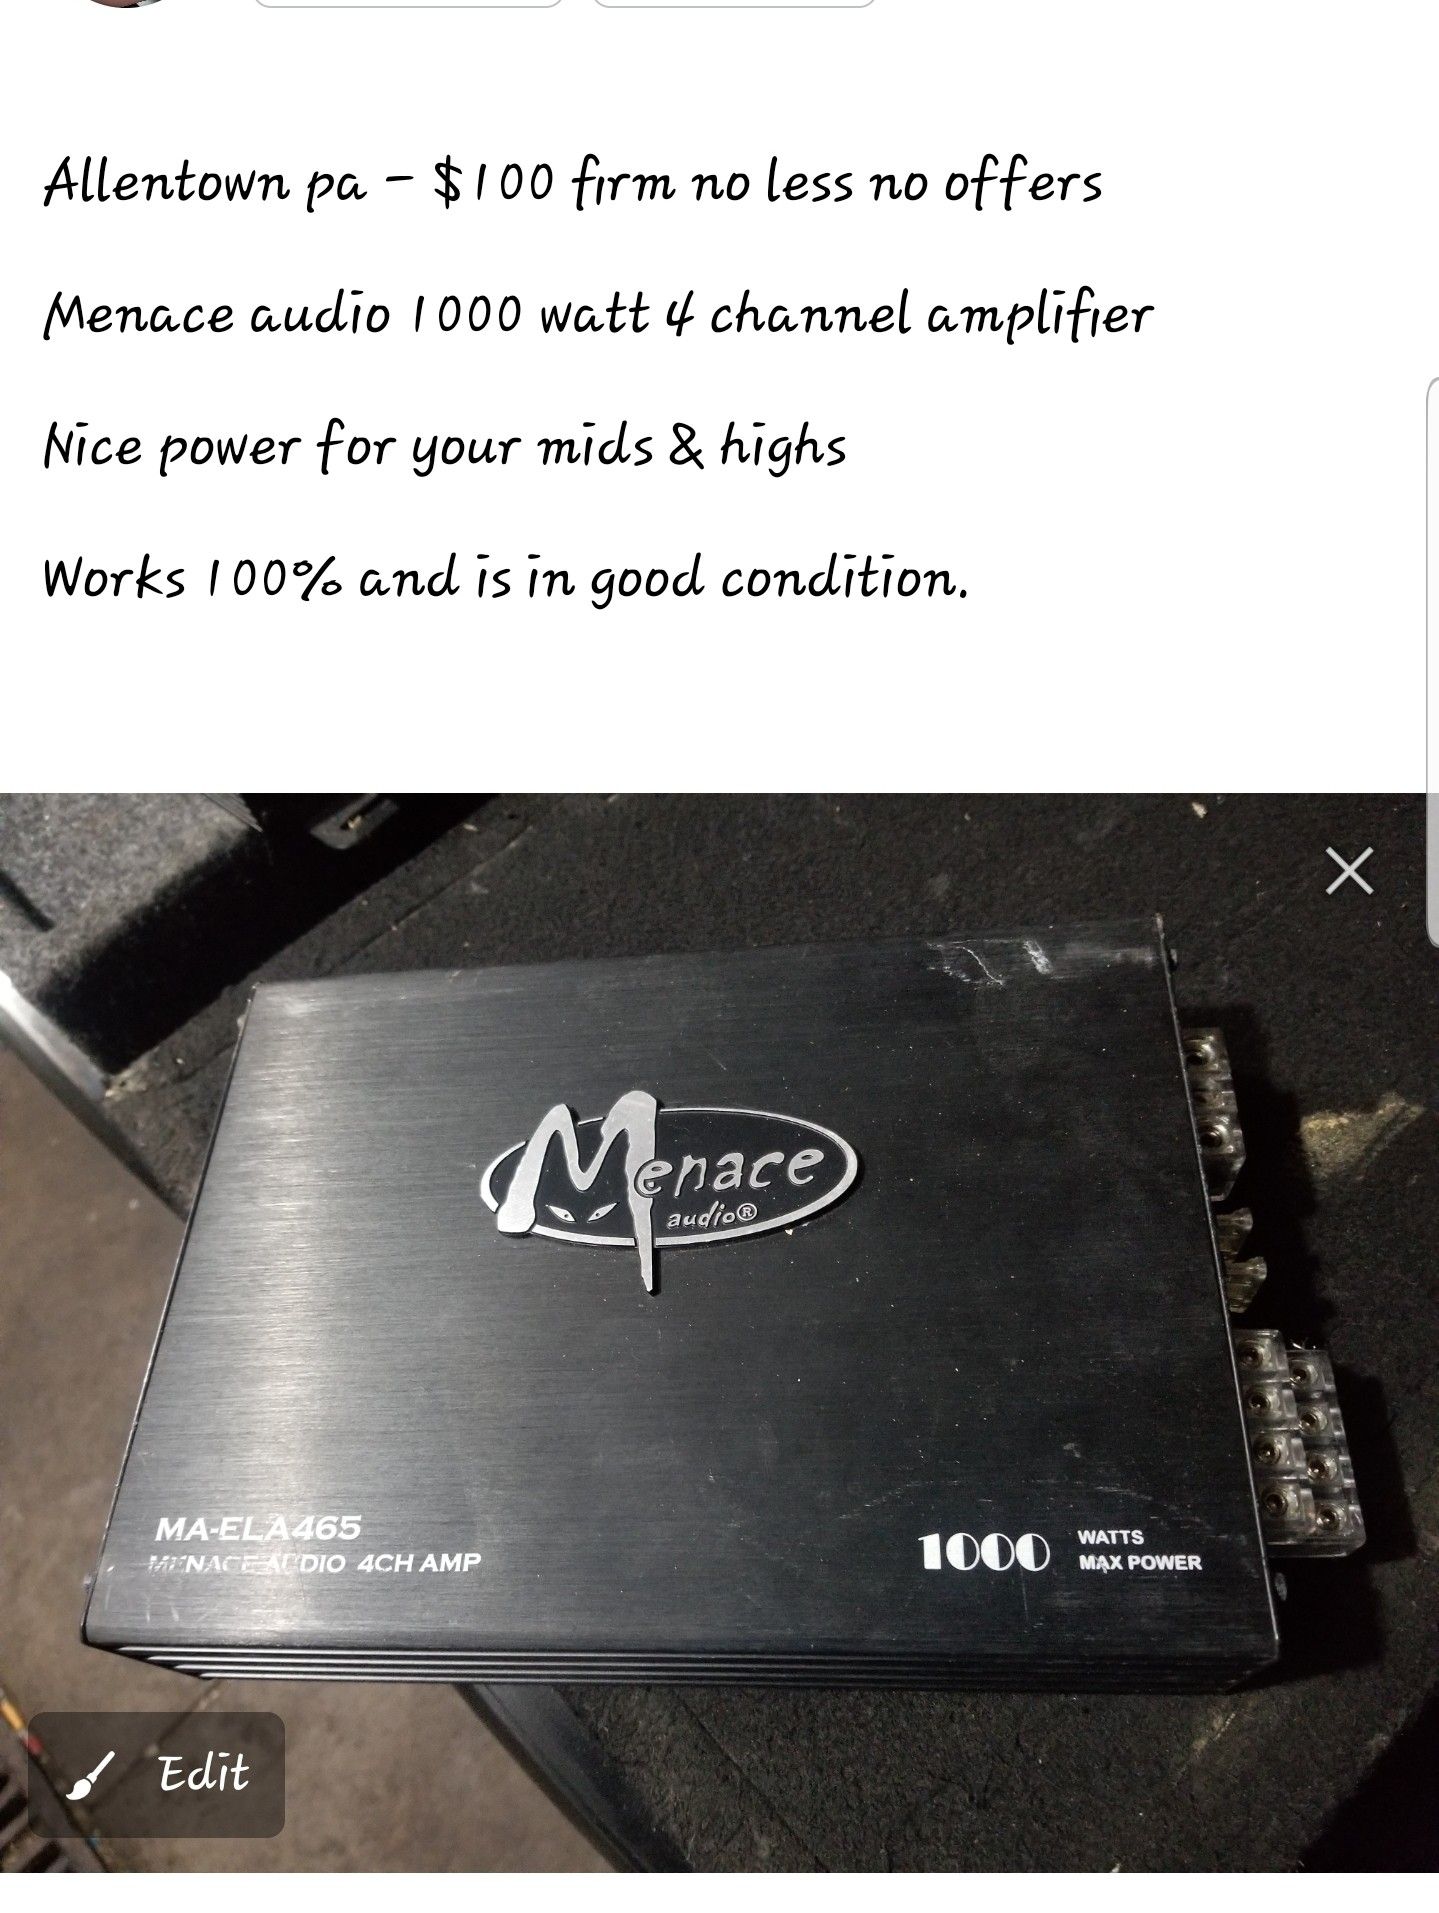 Menace 1000 watt 4 channel amp